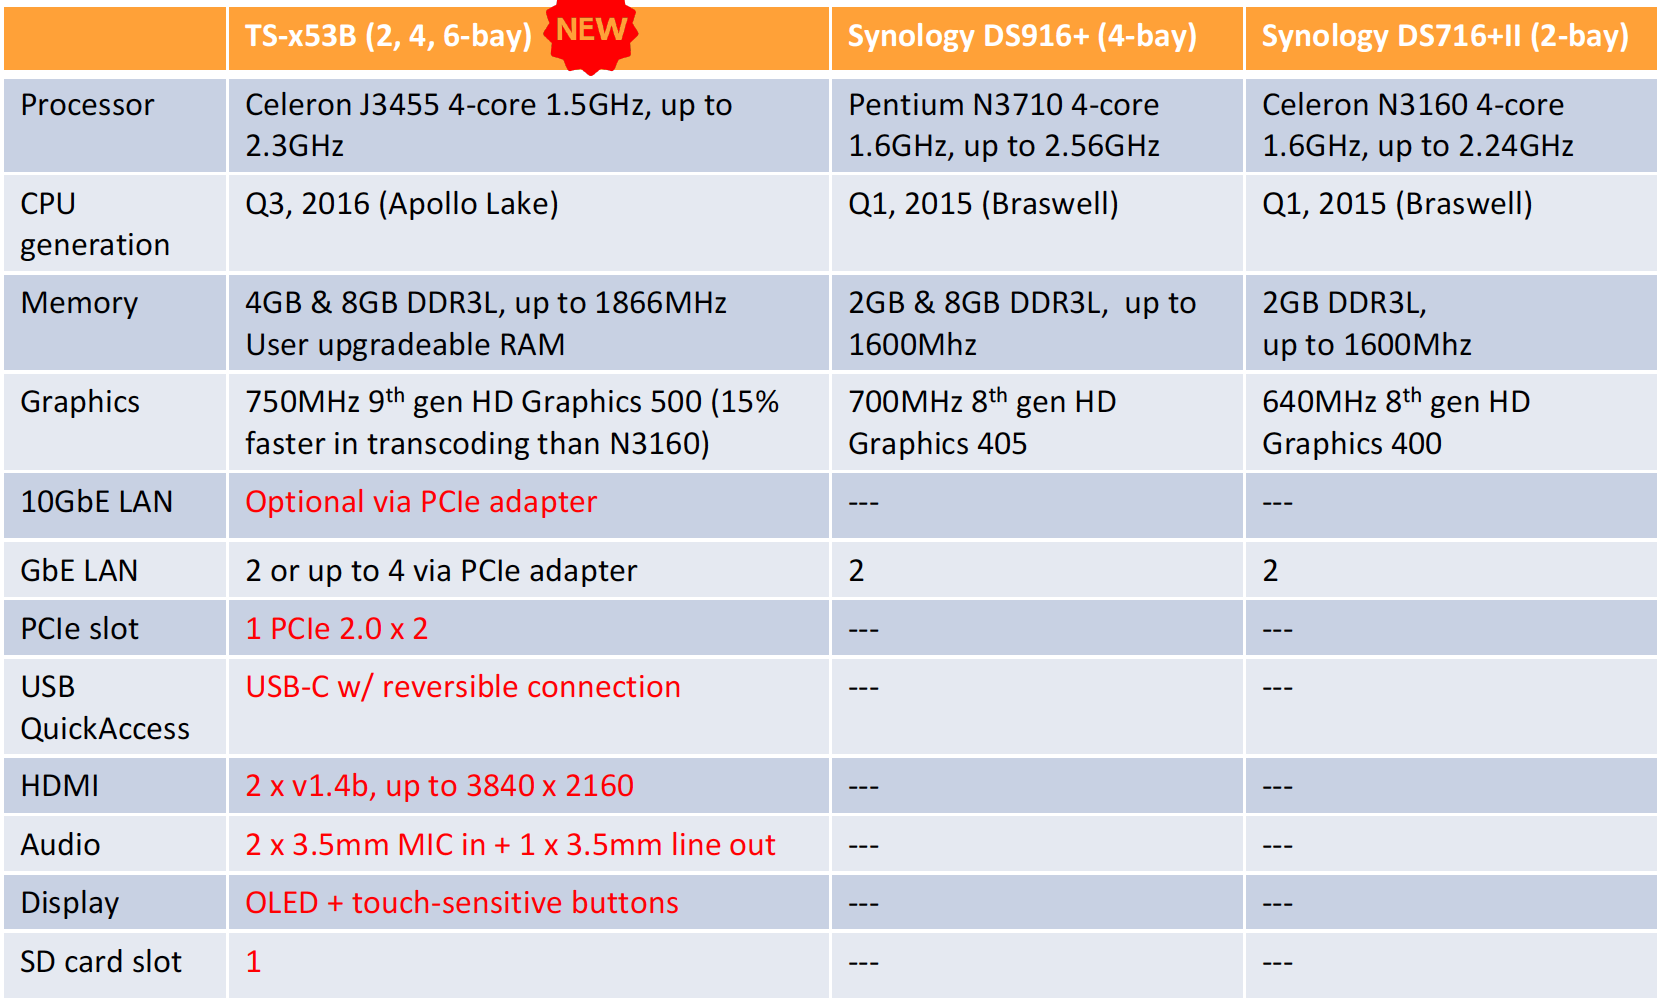 Porovnání QNAP NAS řady TS-x53B se Synology DS916+ a DS716+II